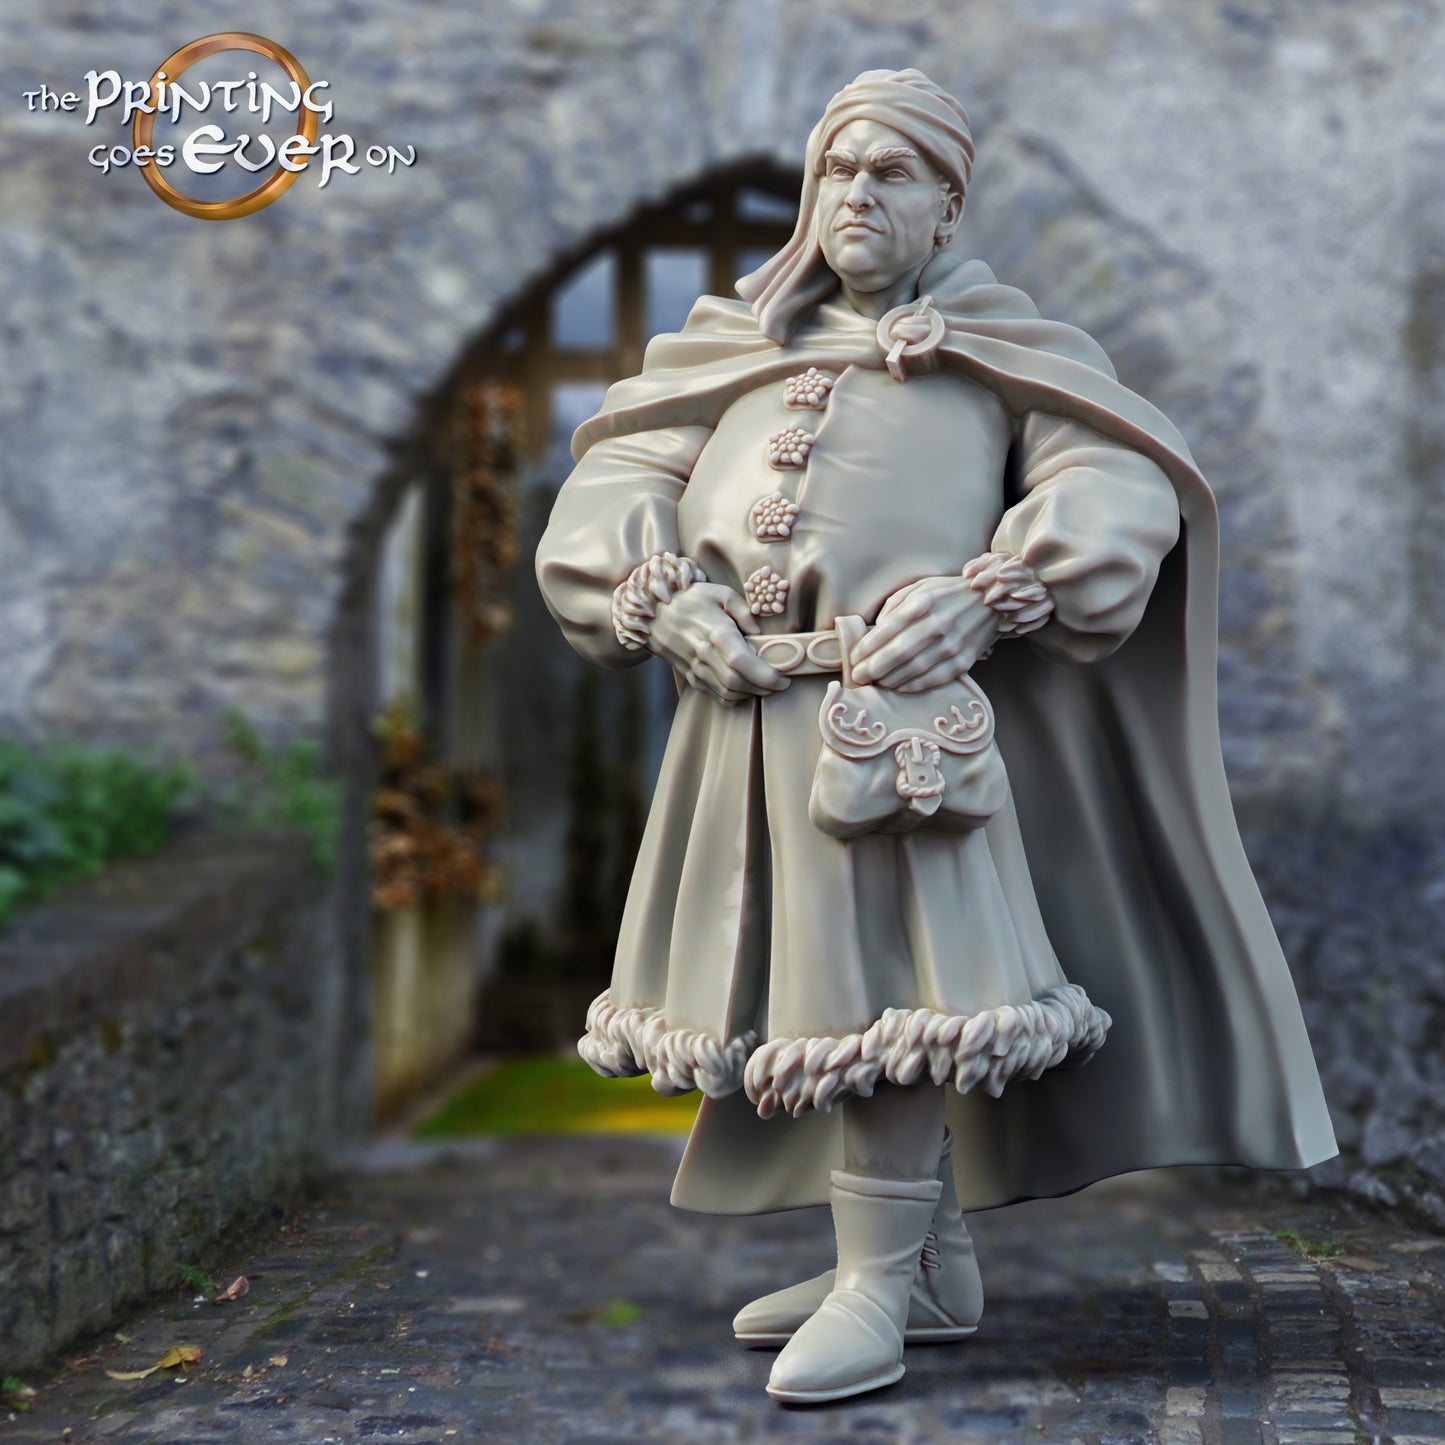 Produktfoto mittelalterliche historische Figur 75mm Scale The Printing Goes Ever On (TPGEO)  0: Mittelalterliche Ritter Figuren Dorfbewohner Adeliger Mann Mittelalterliche Stadt